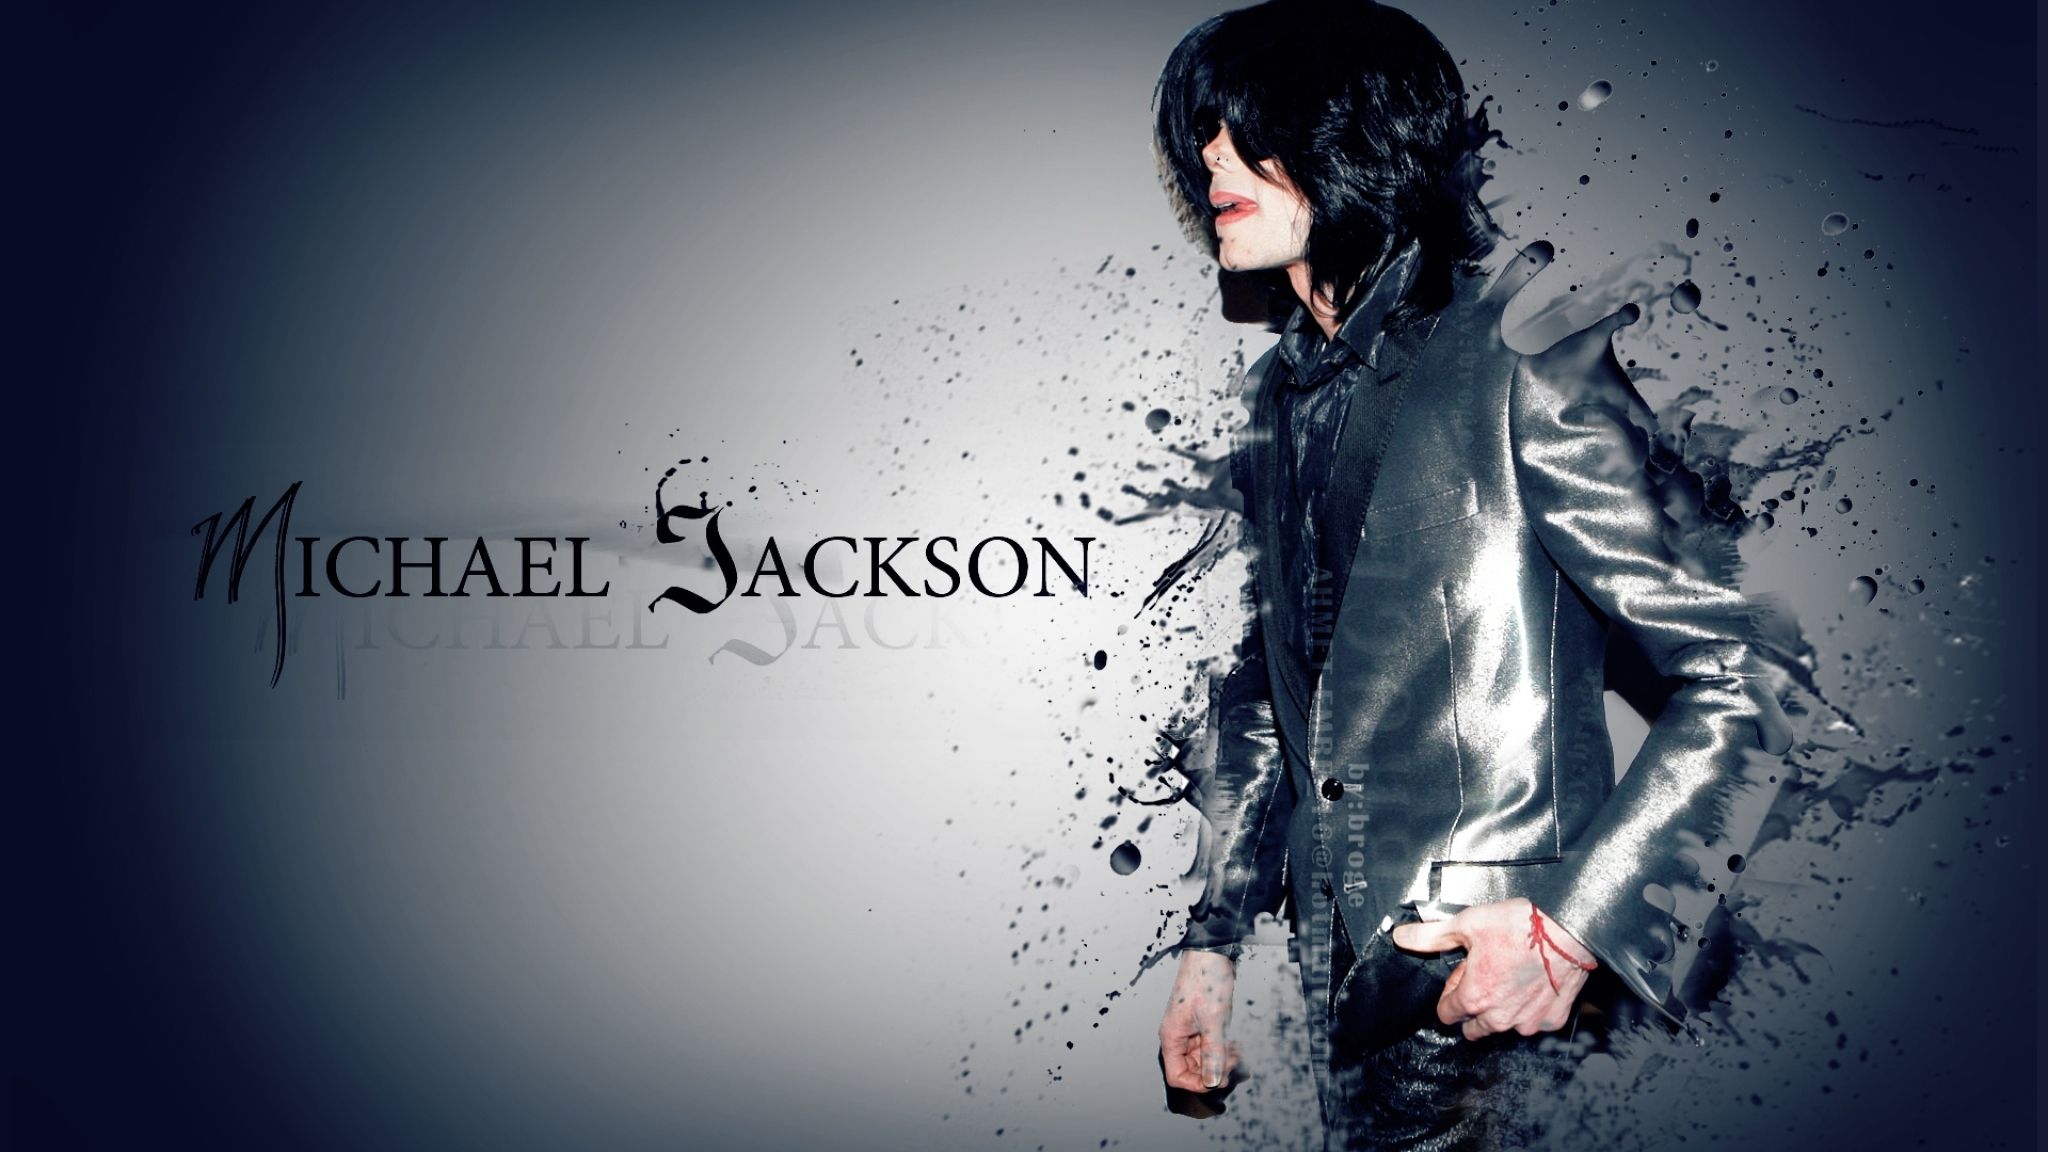 Michael Jackson Glamorous wallpaper 2048x1152